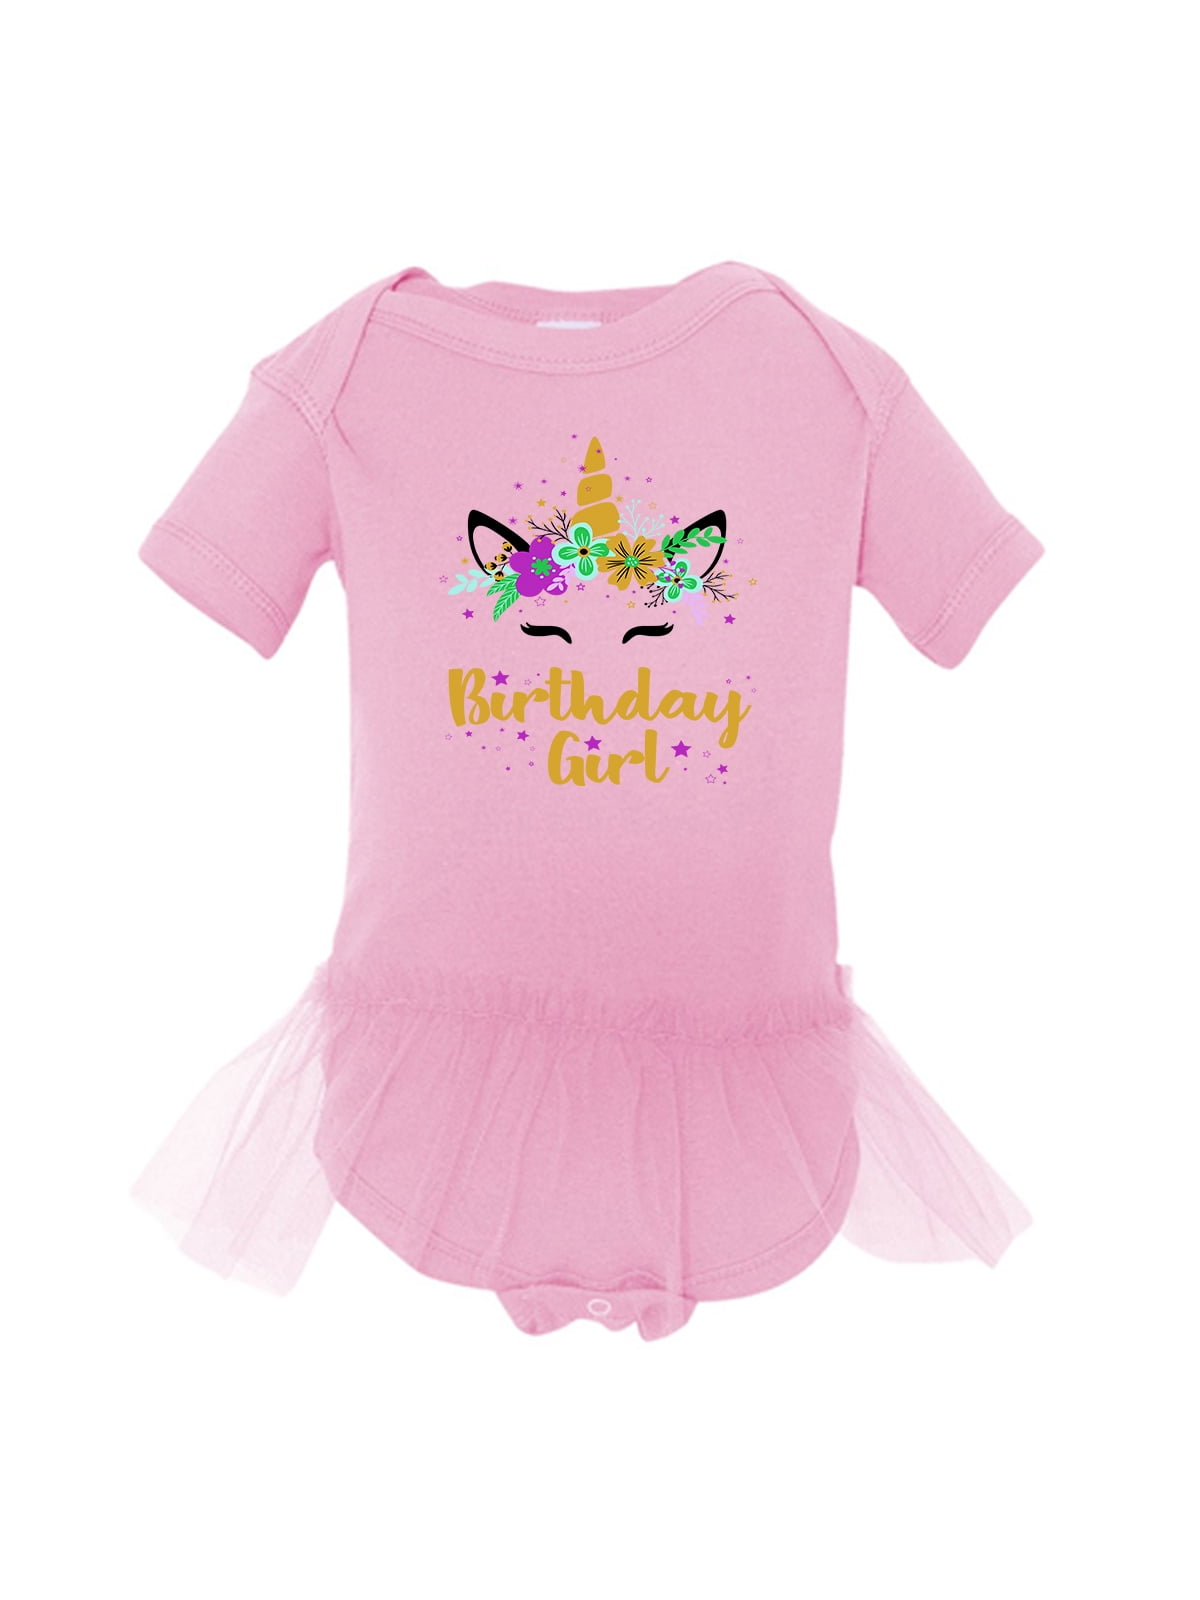 baby girl 1st birthday shirt